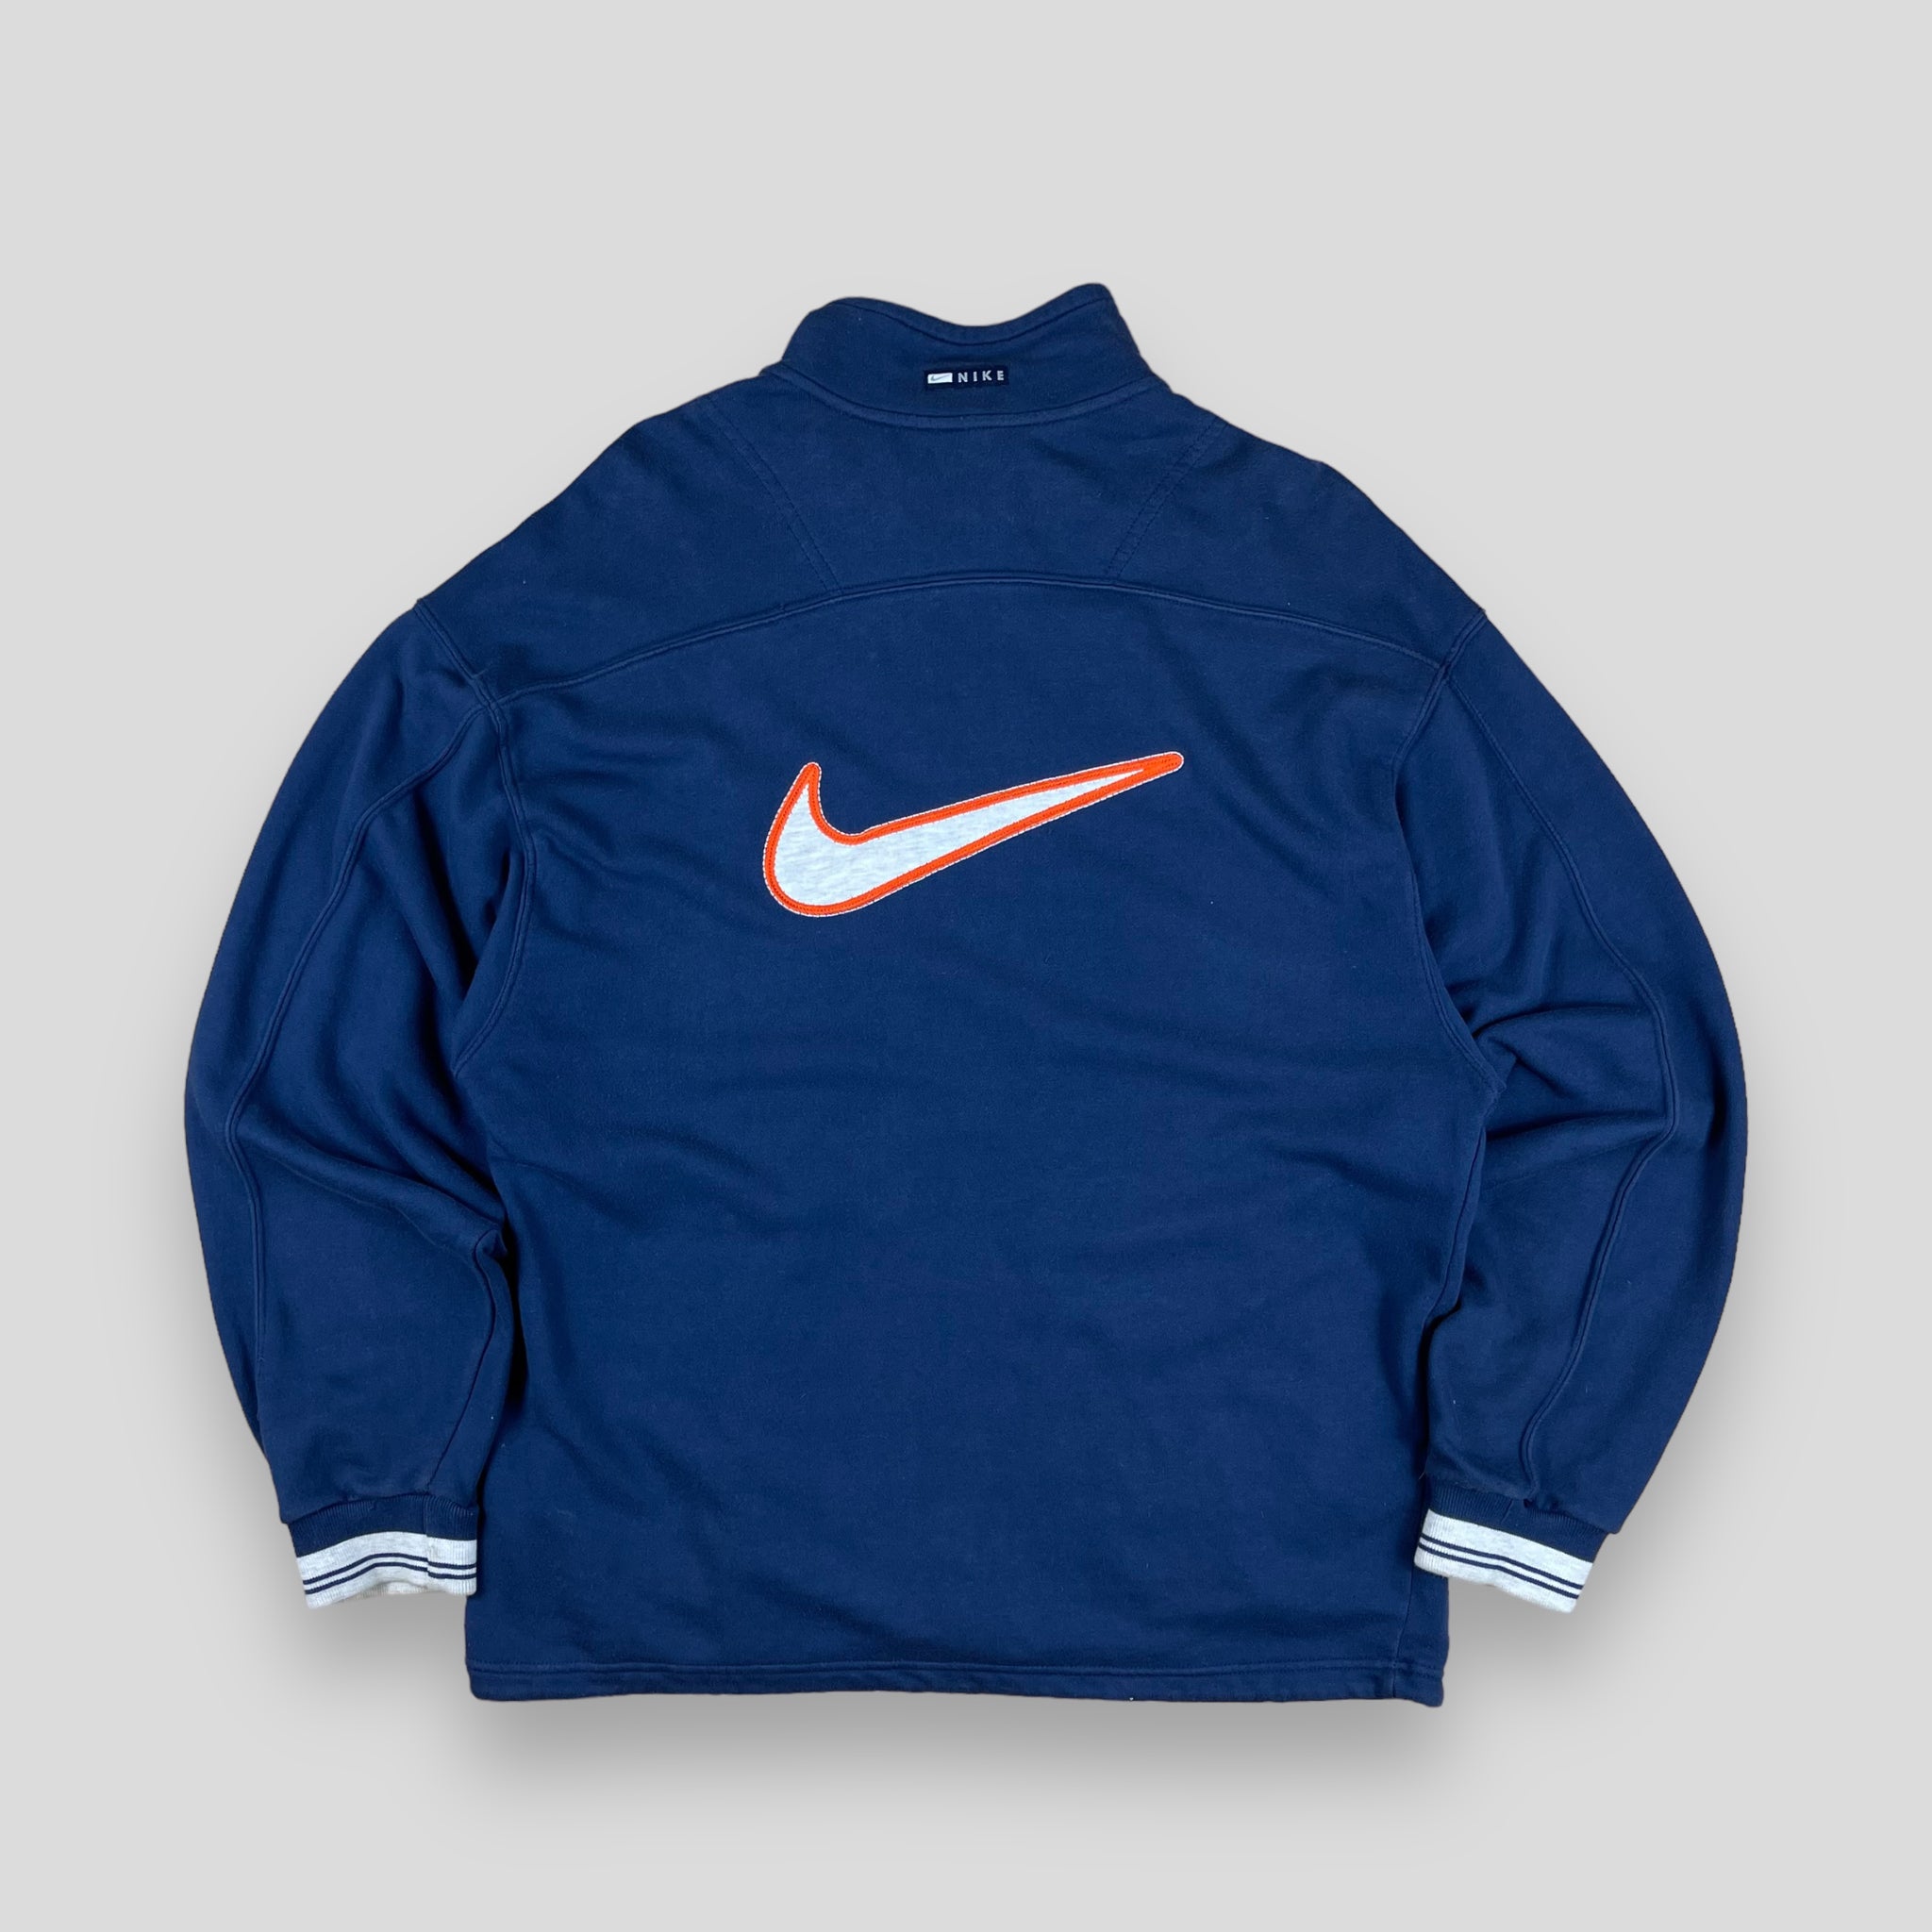 Vintage Nike zip up